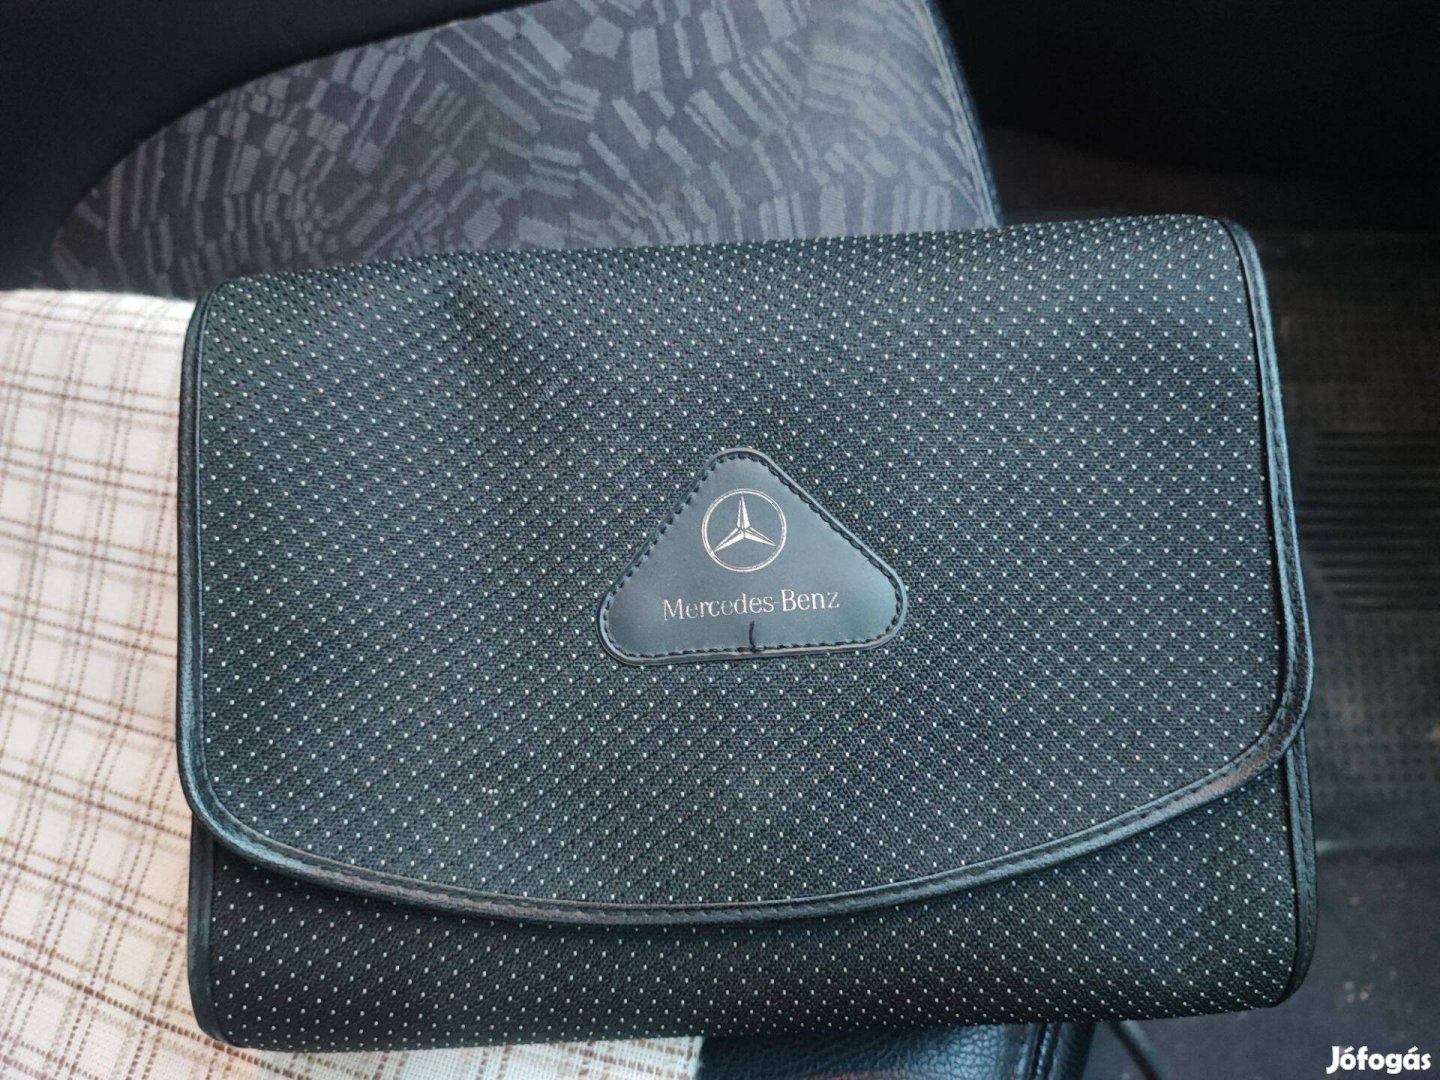 Mercedes, Mercedes-Benz kézikönyv tartó táska